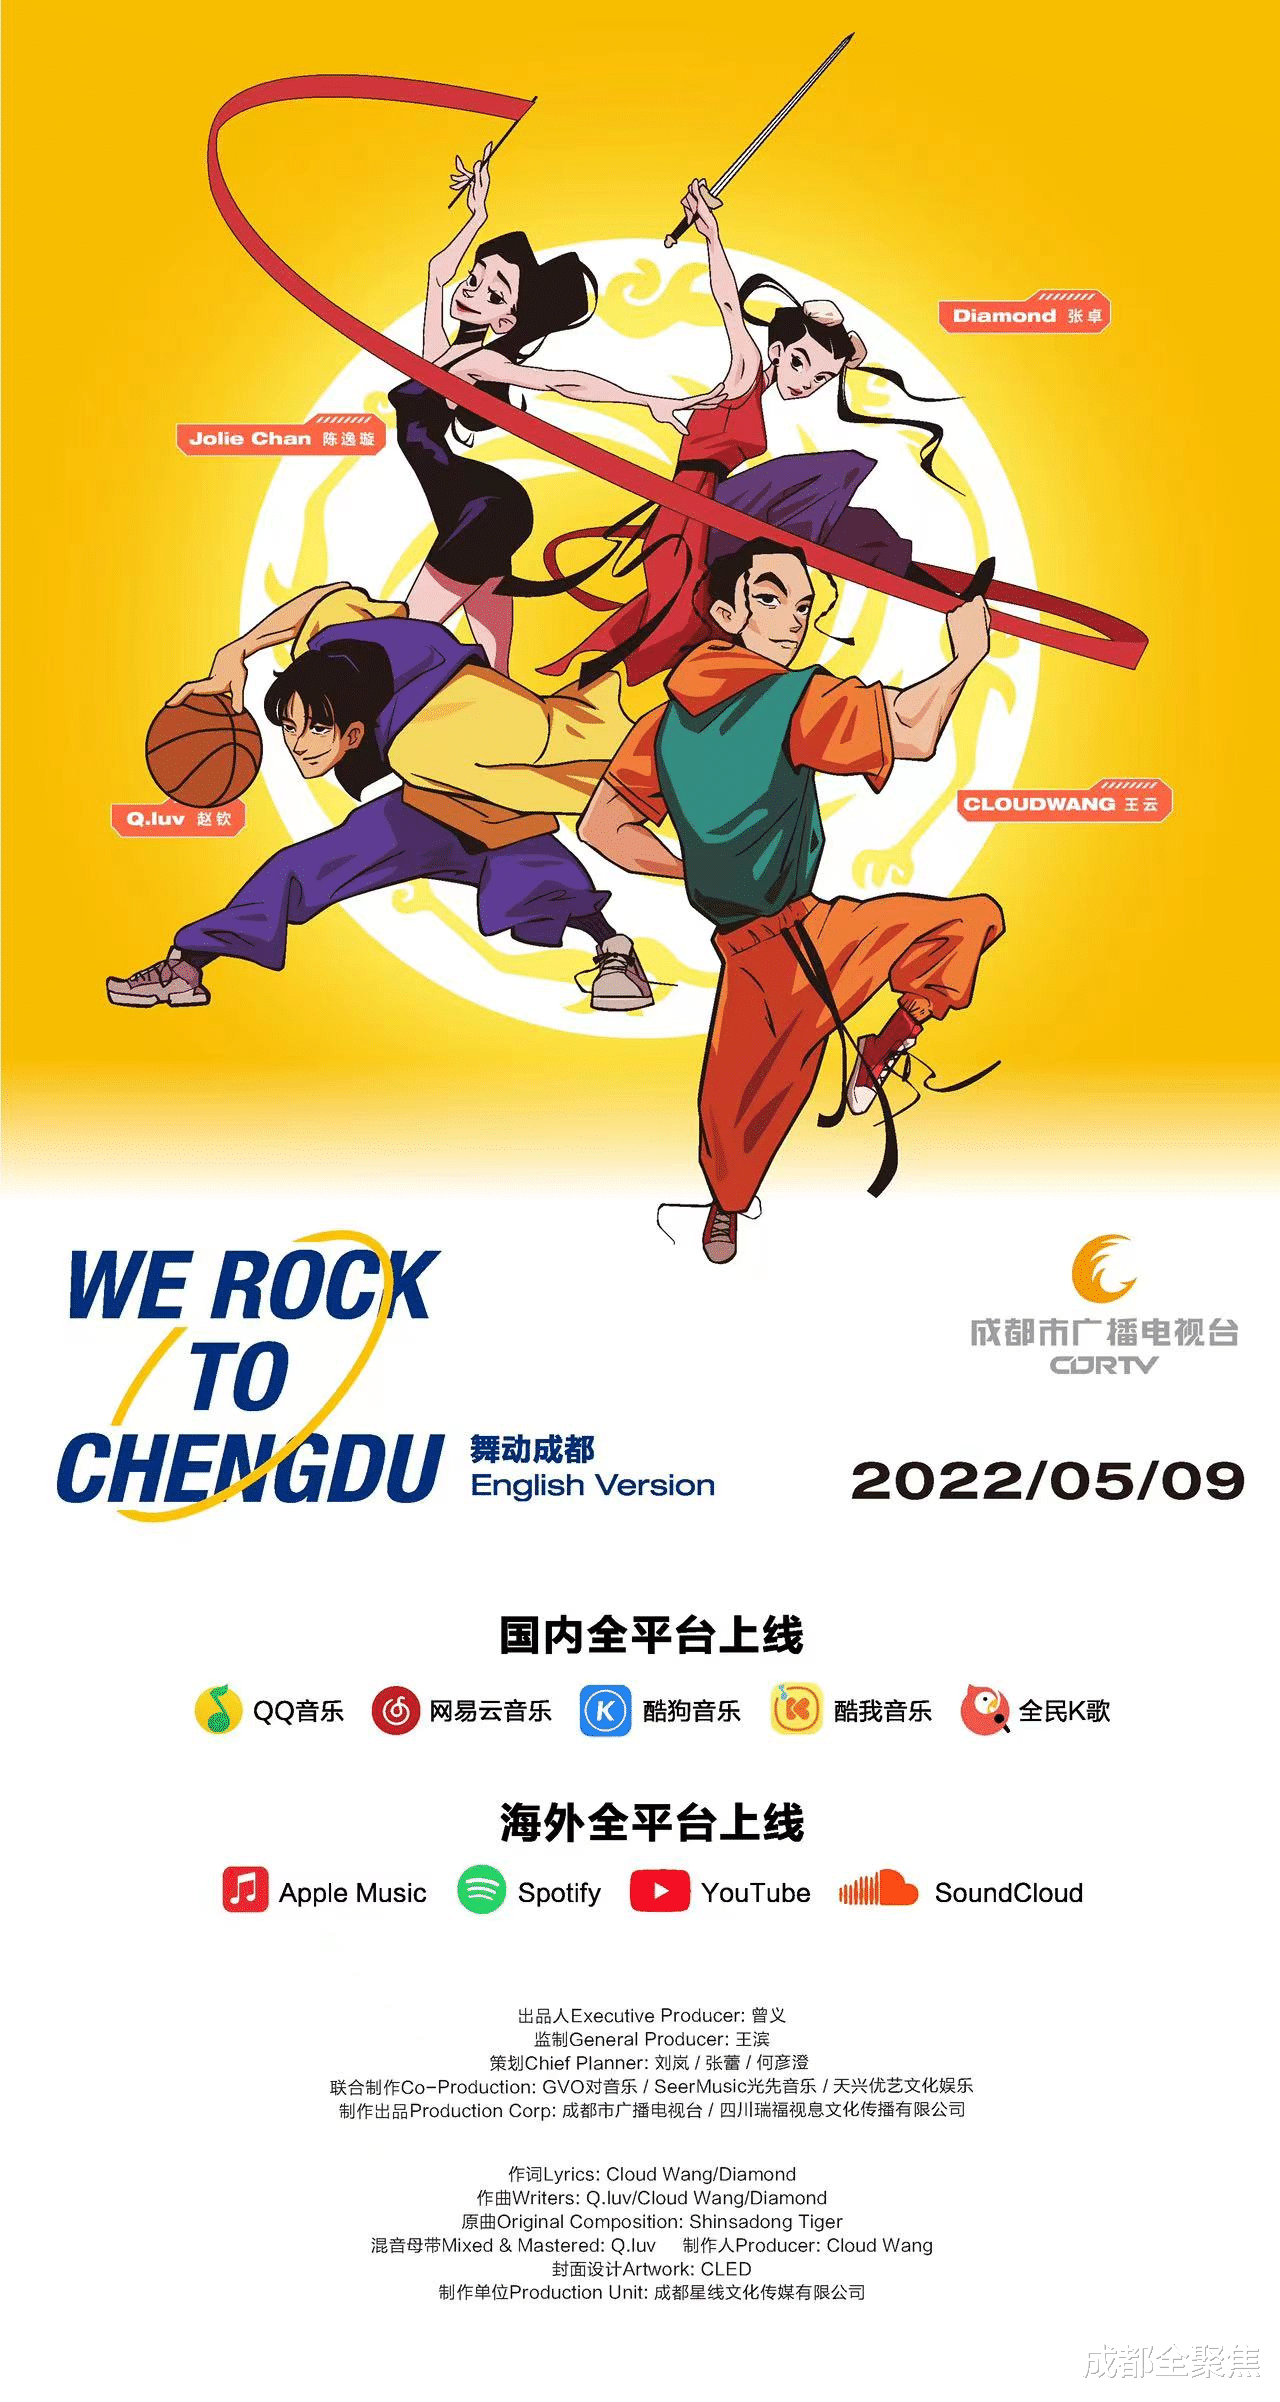 《【煜星注册首页】元气满满 潮范儿十足 “We Rock to Chengdu”今日全球上线》